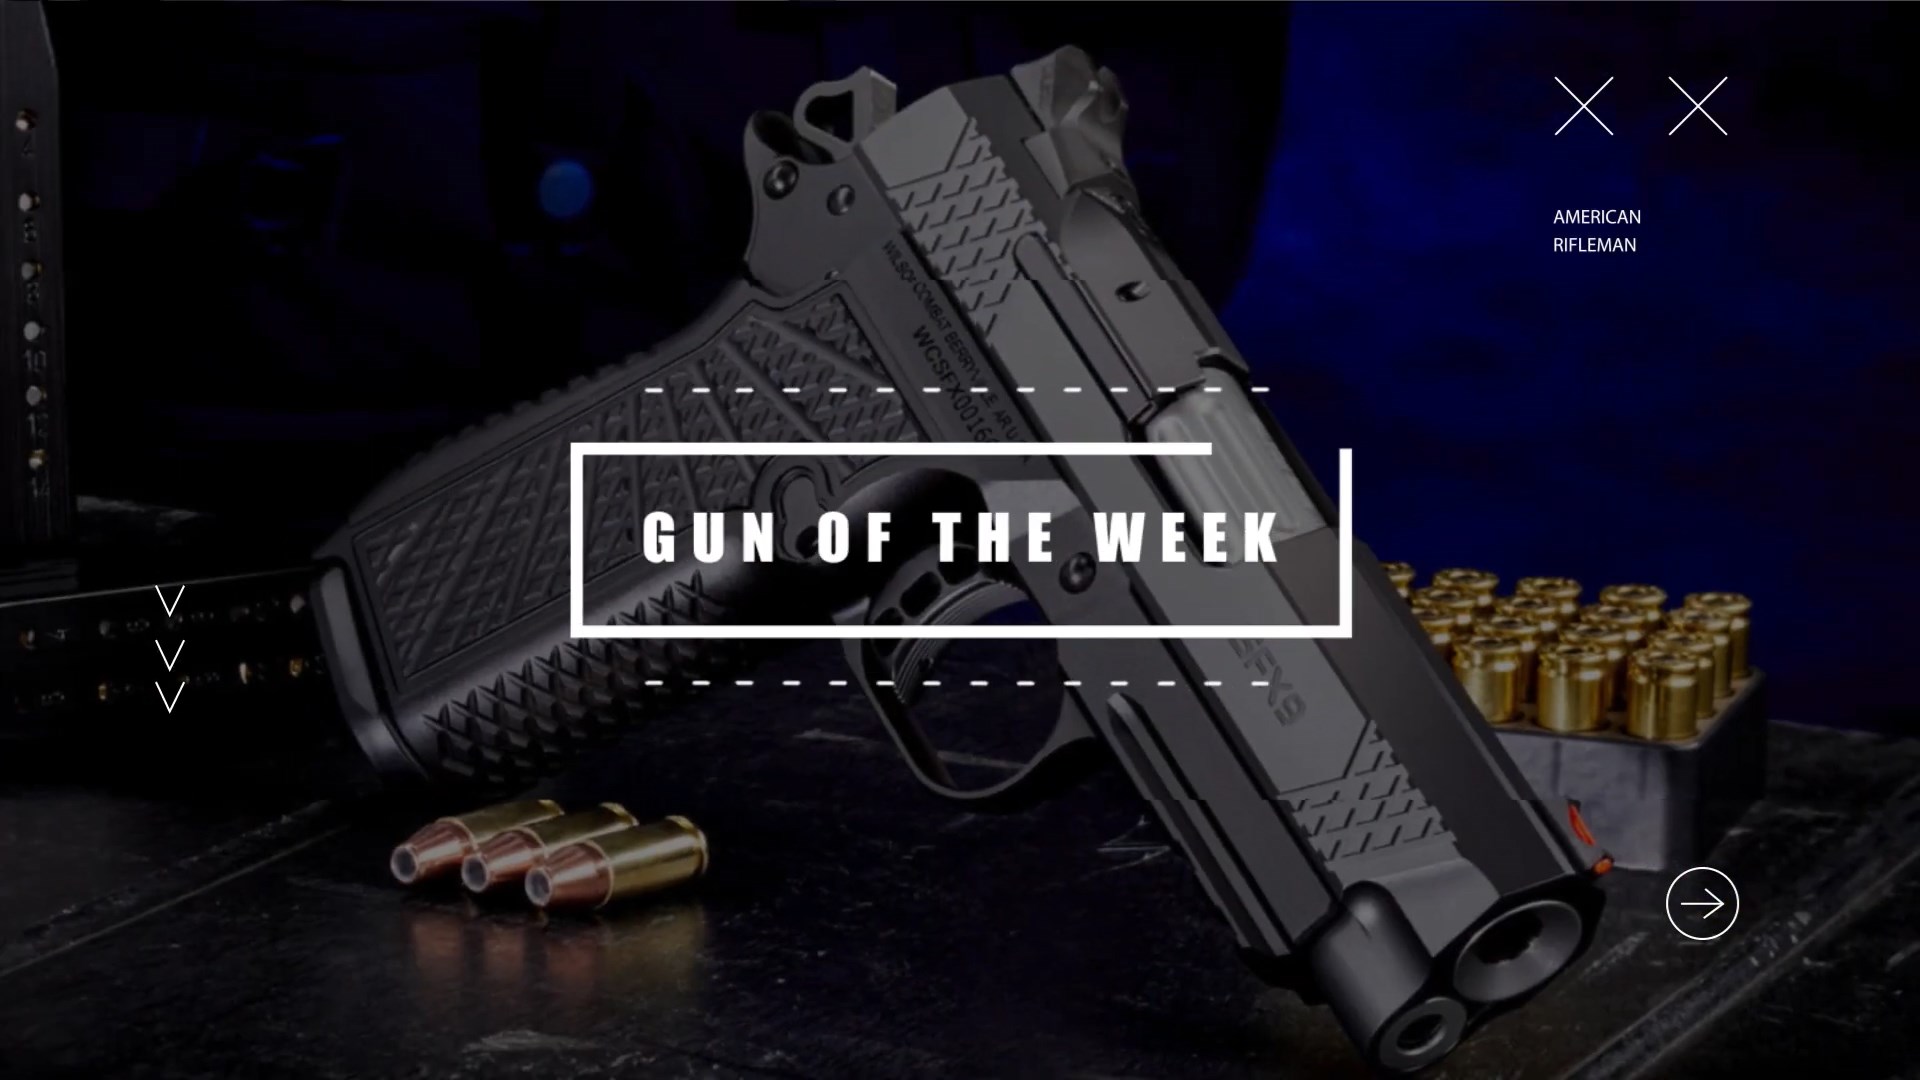 Gun Of The Week title screen American Rifleman showing handgun pistol wilson combat sfx9 gun ammunition blue background